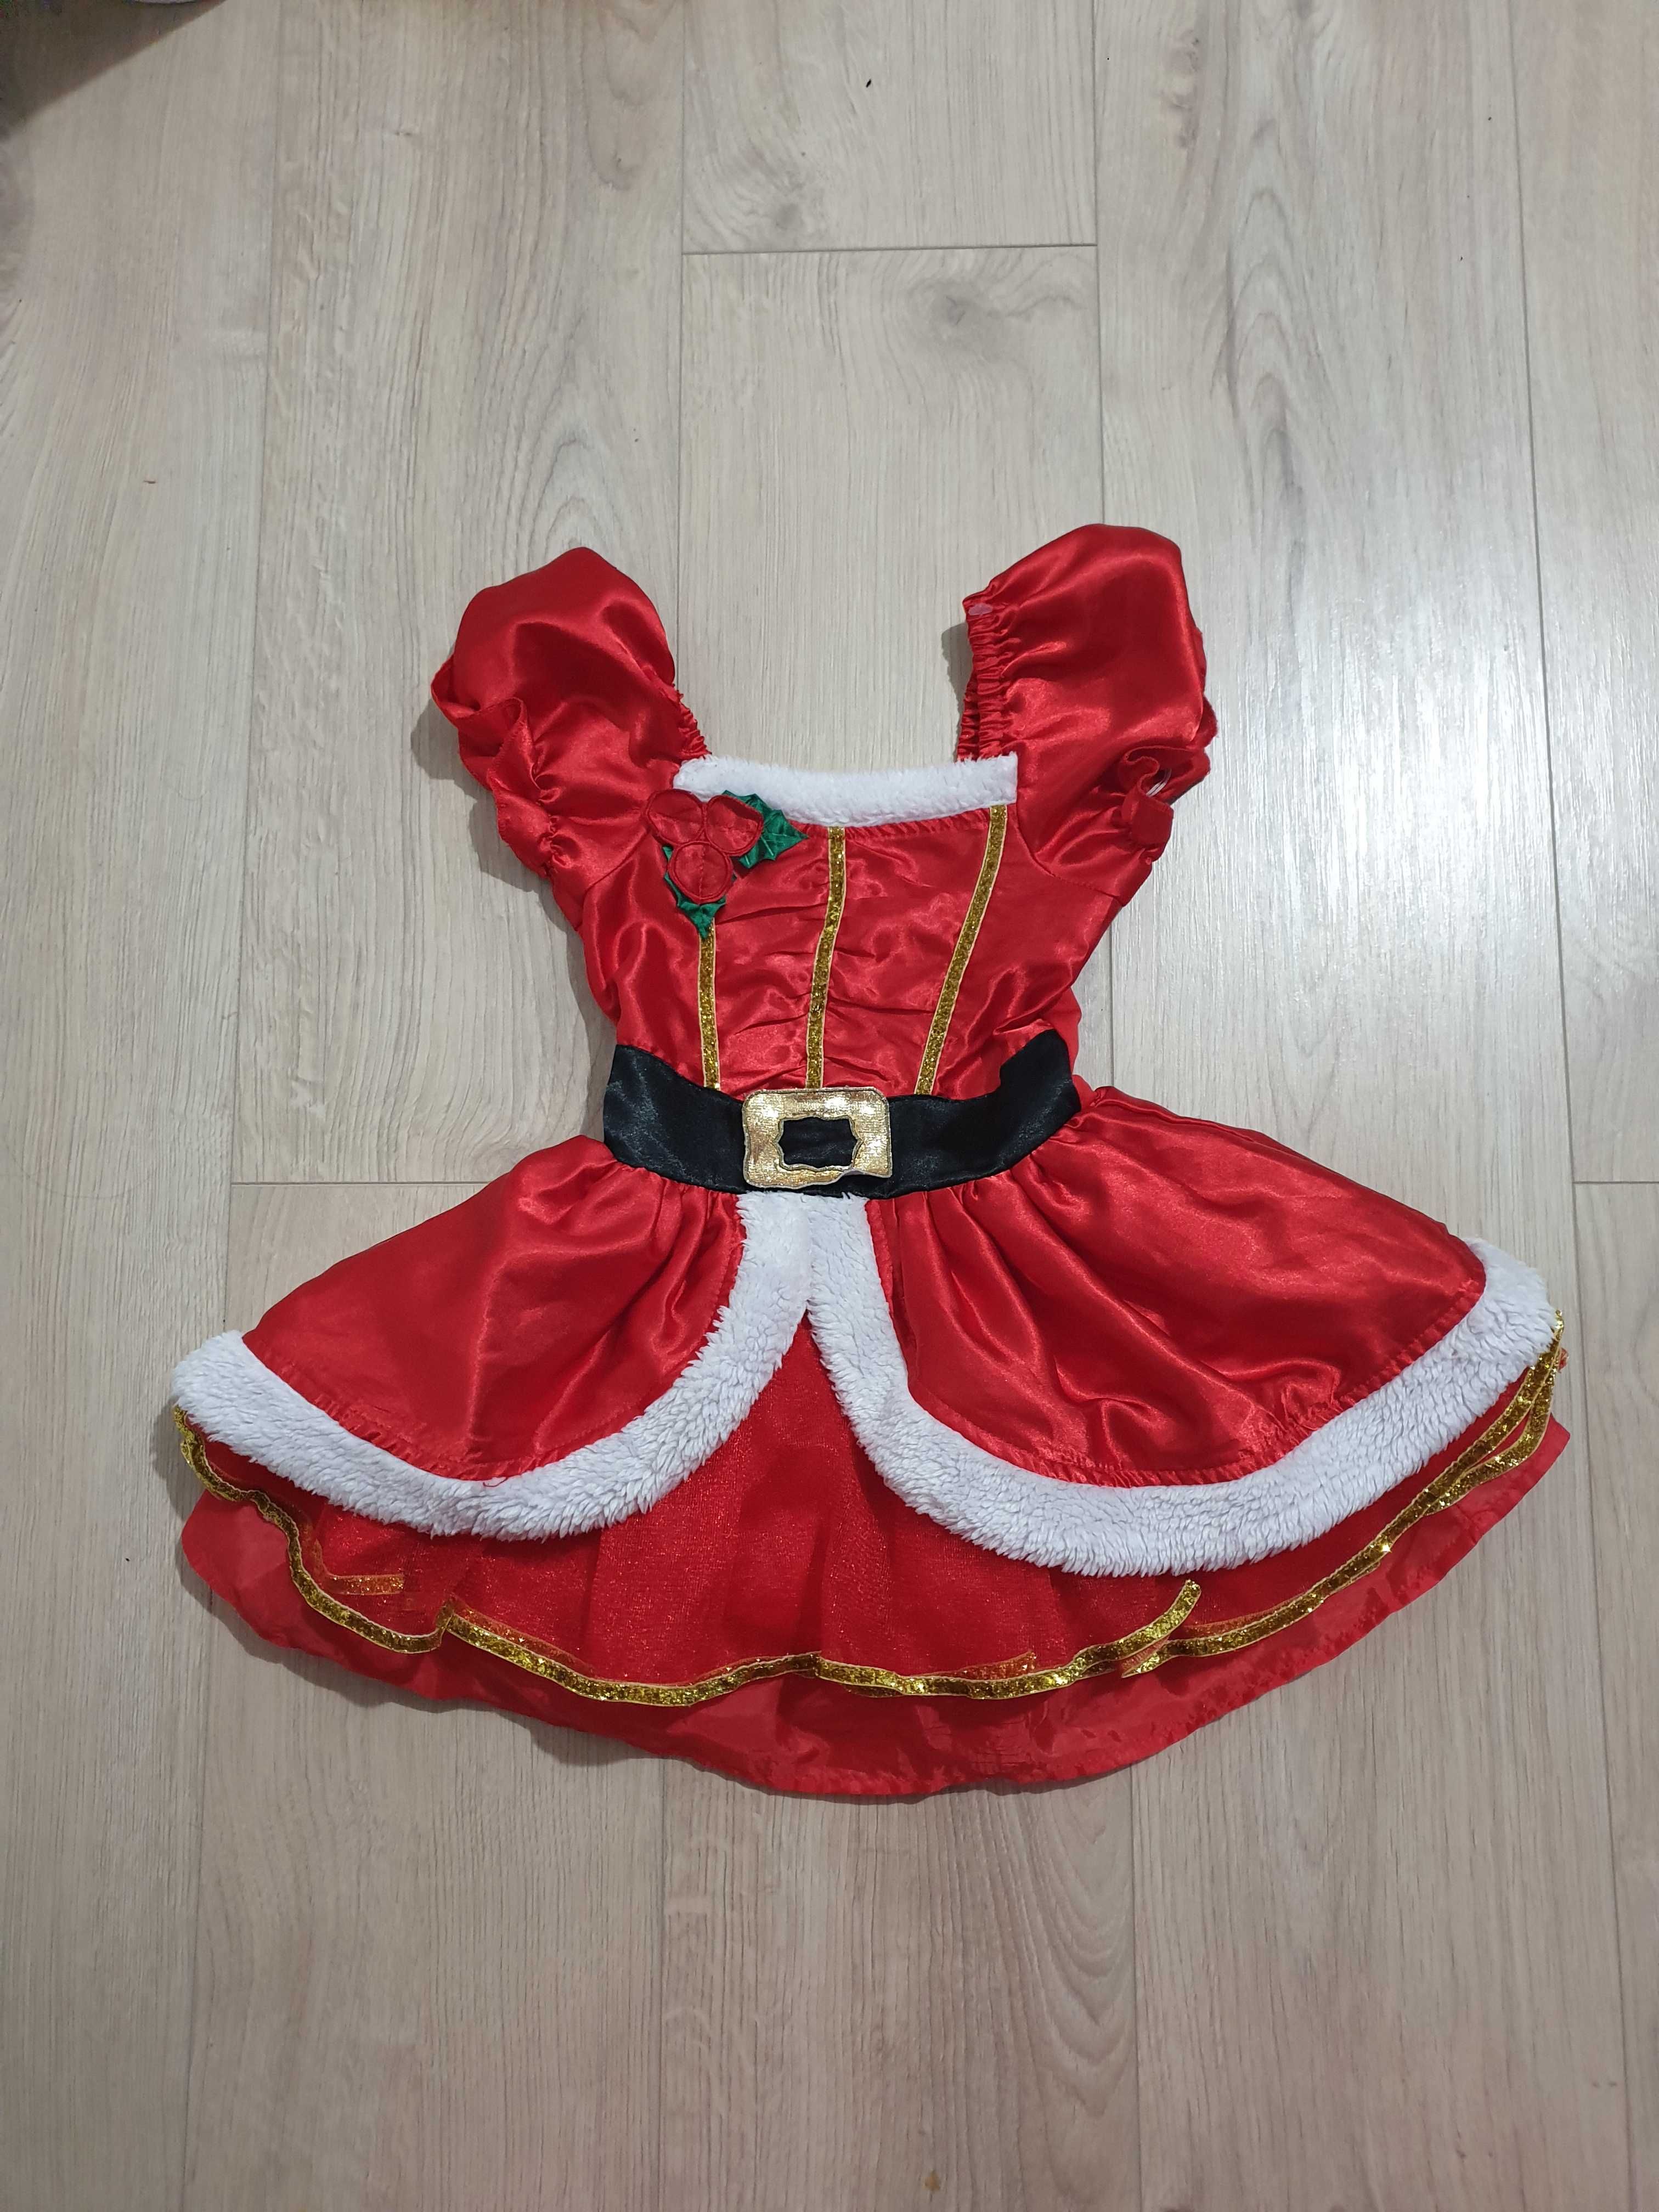 Sukienka 98 Mikołajowa mikołajkowa, 2-3 lata karnawałowa kostium bal